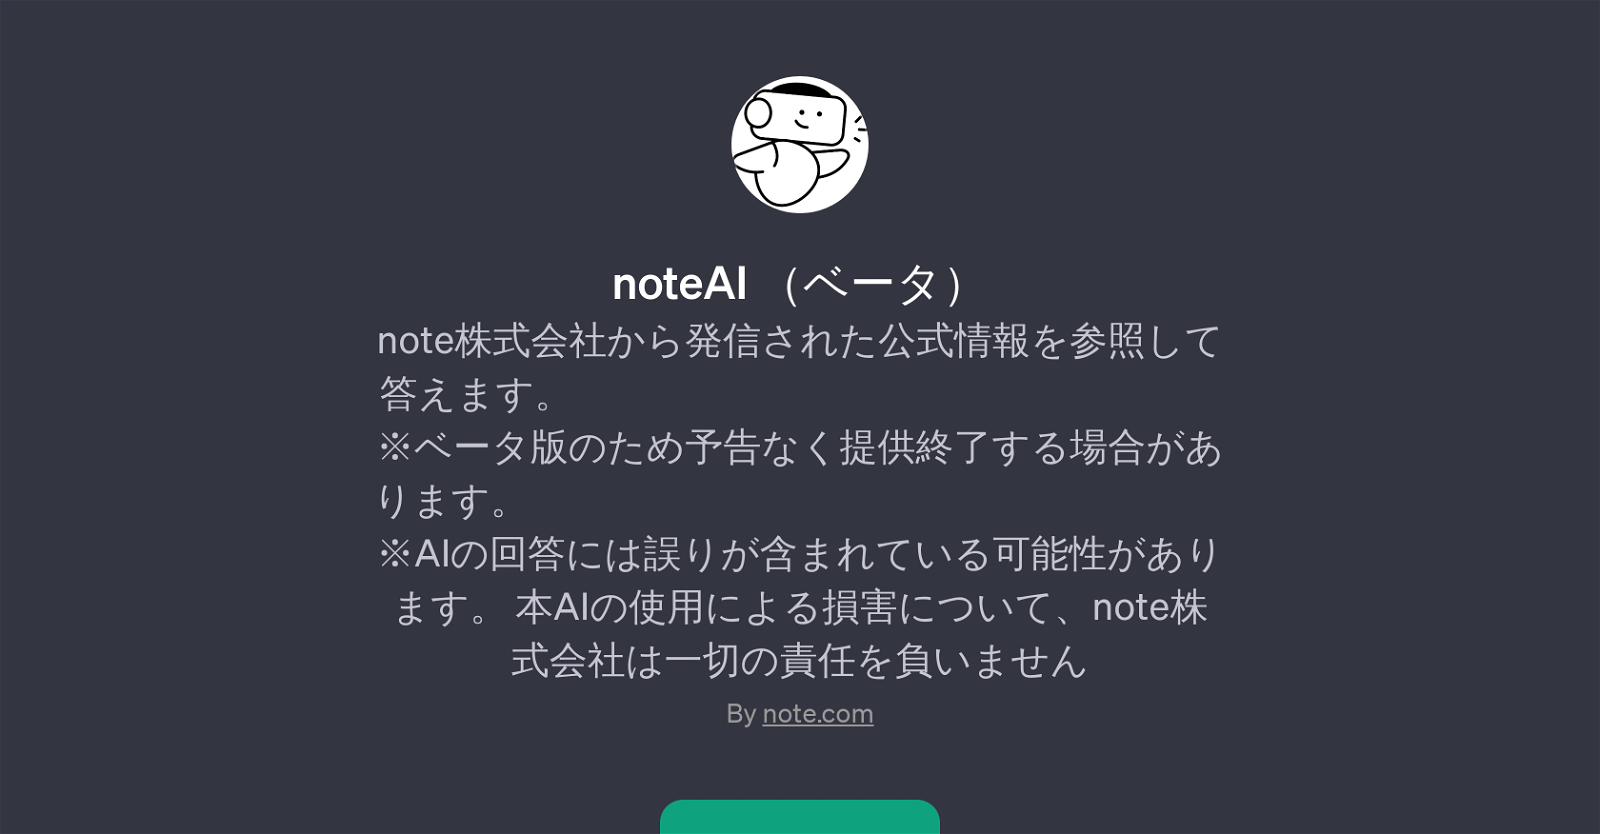 noteAI website